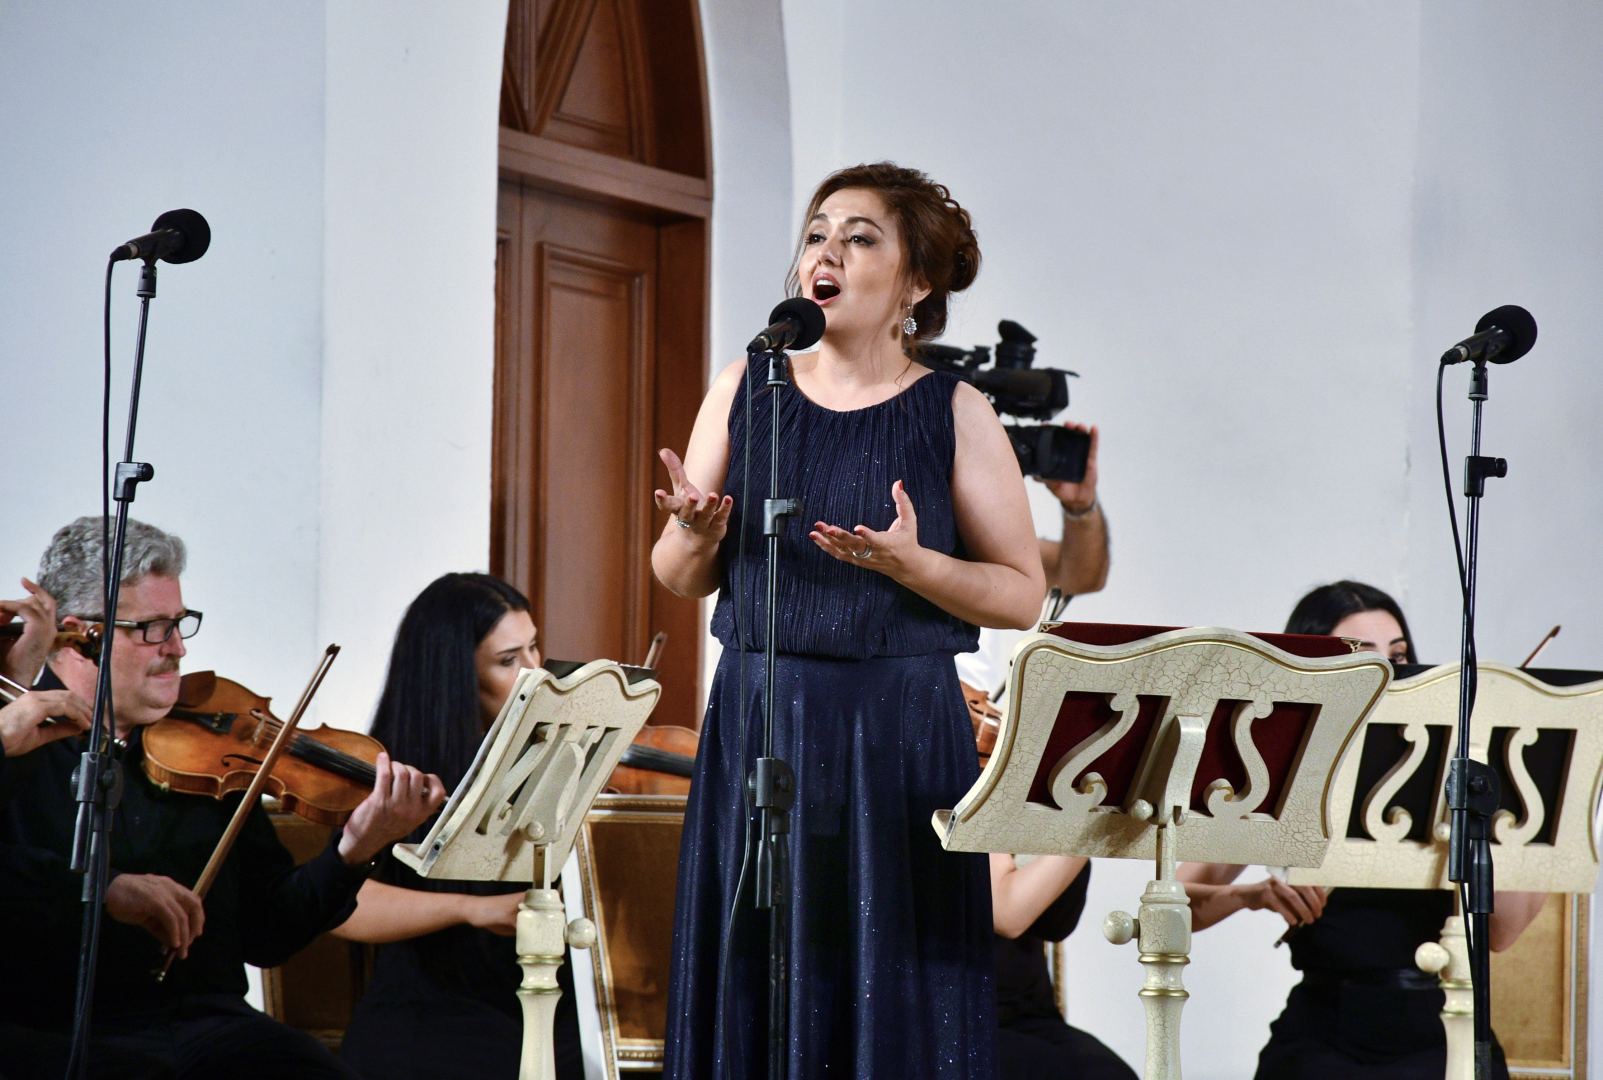 В Баку состоялся благотворительный концерт "Карабахская ночь" (ФОТО)